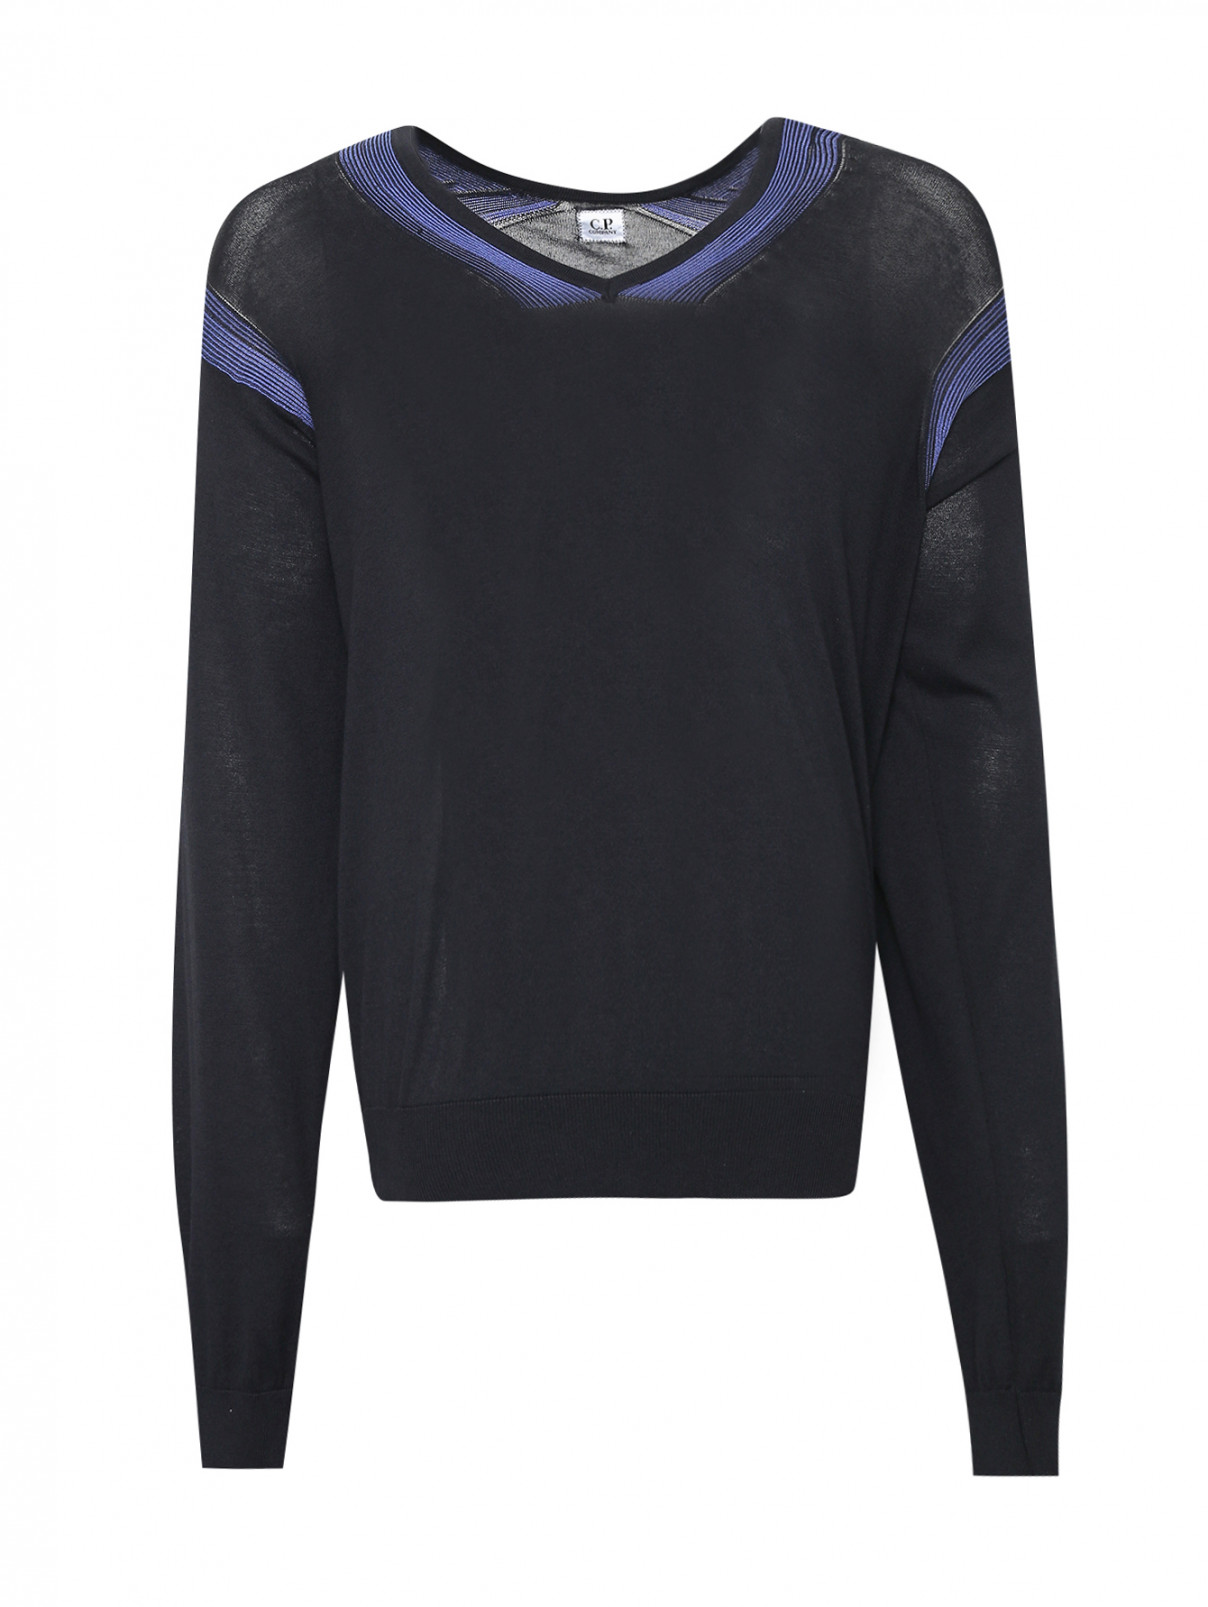 Пуловер из хлопка и шелка C.P. Company  –  Общий вид  – Цвет:  Синий